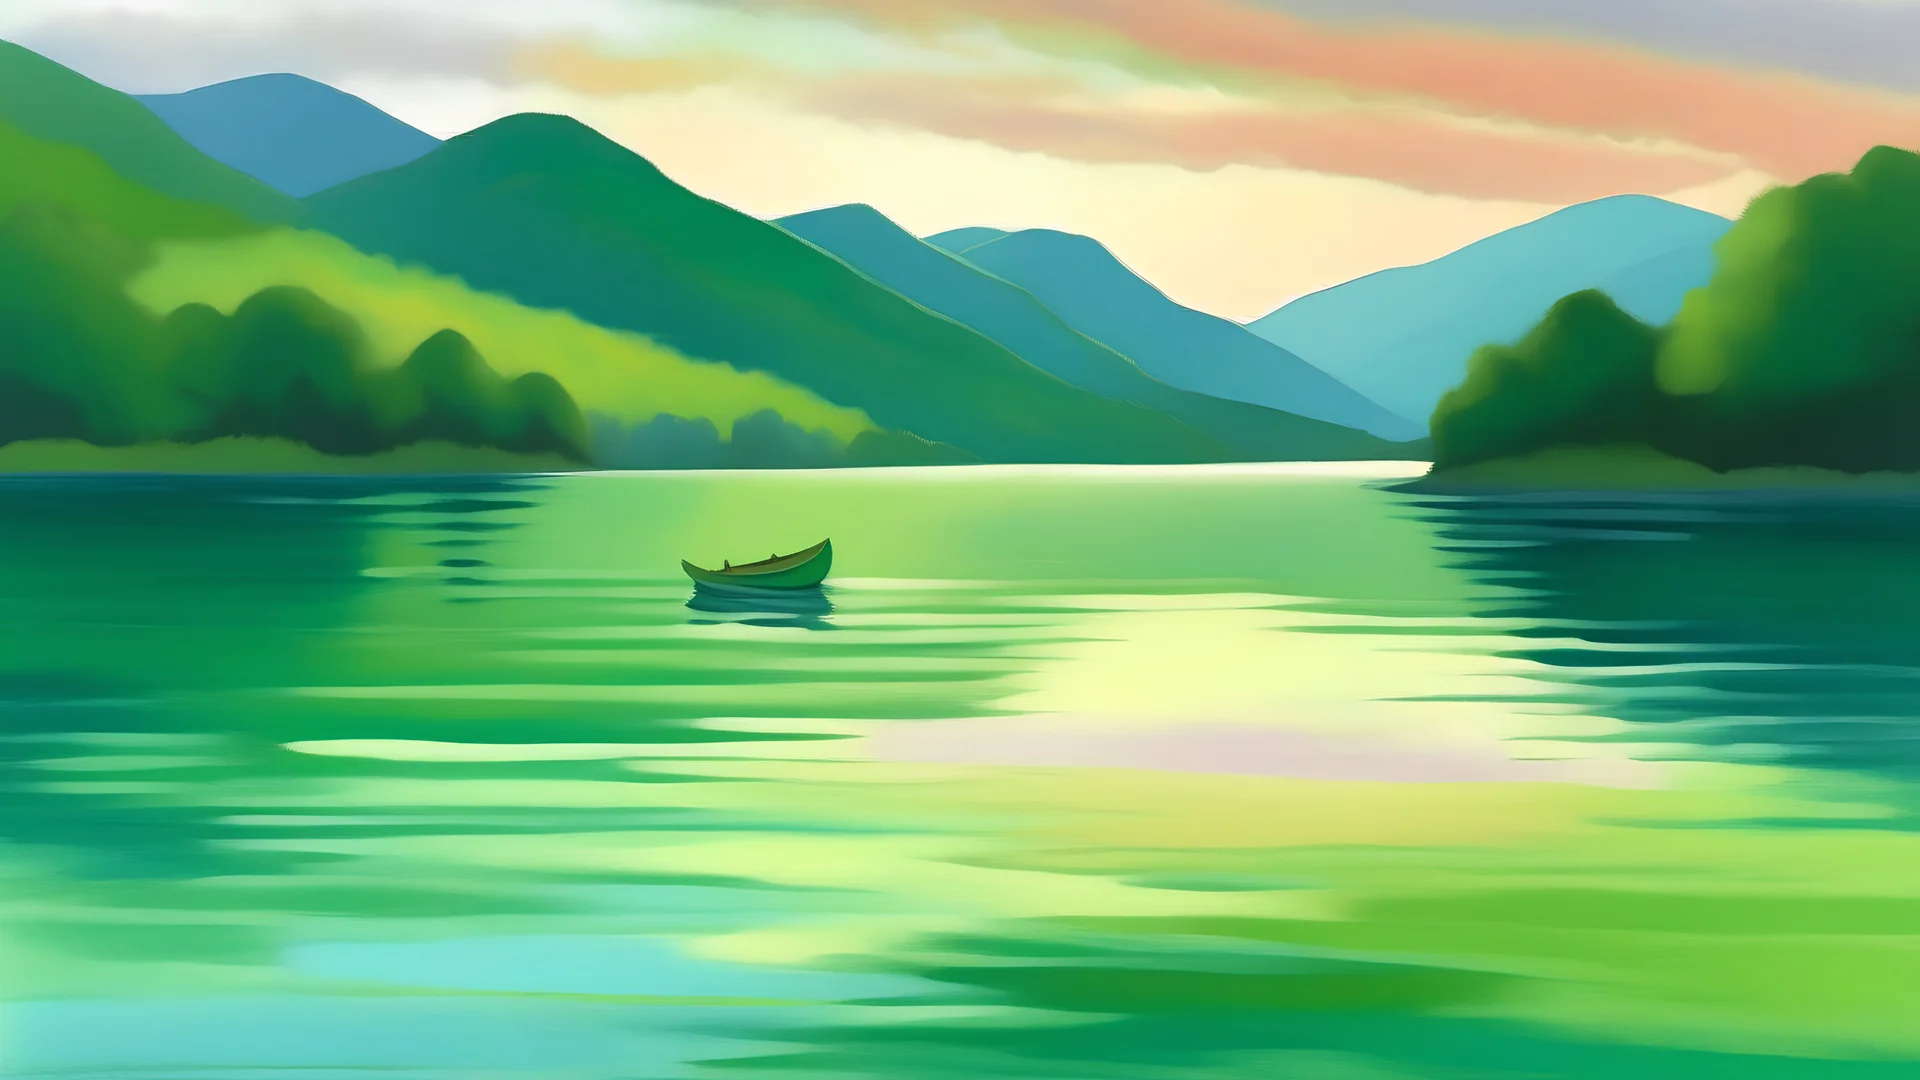 készíts egy festményt Cézanne stílusában az alábbiak szerint: napkelte idején sima felületű zöld vizű tó, rajta a távolban apró csónak, messze lankás hegyek